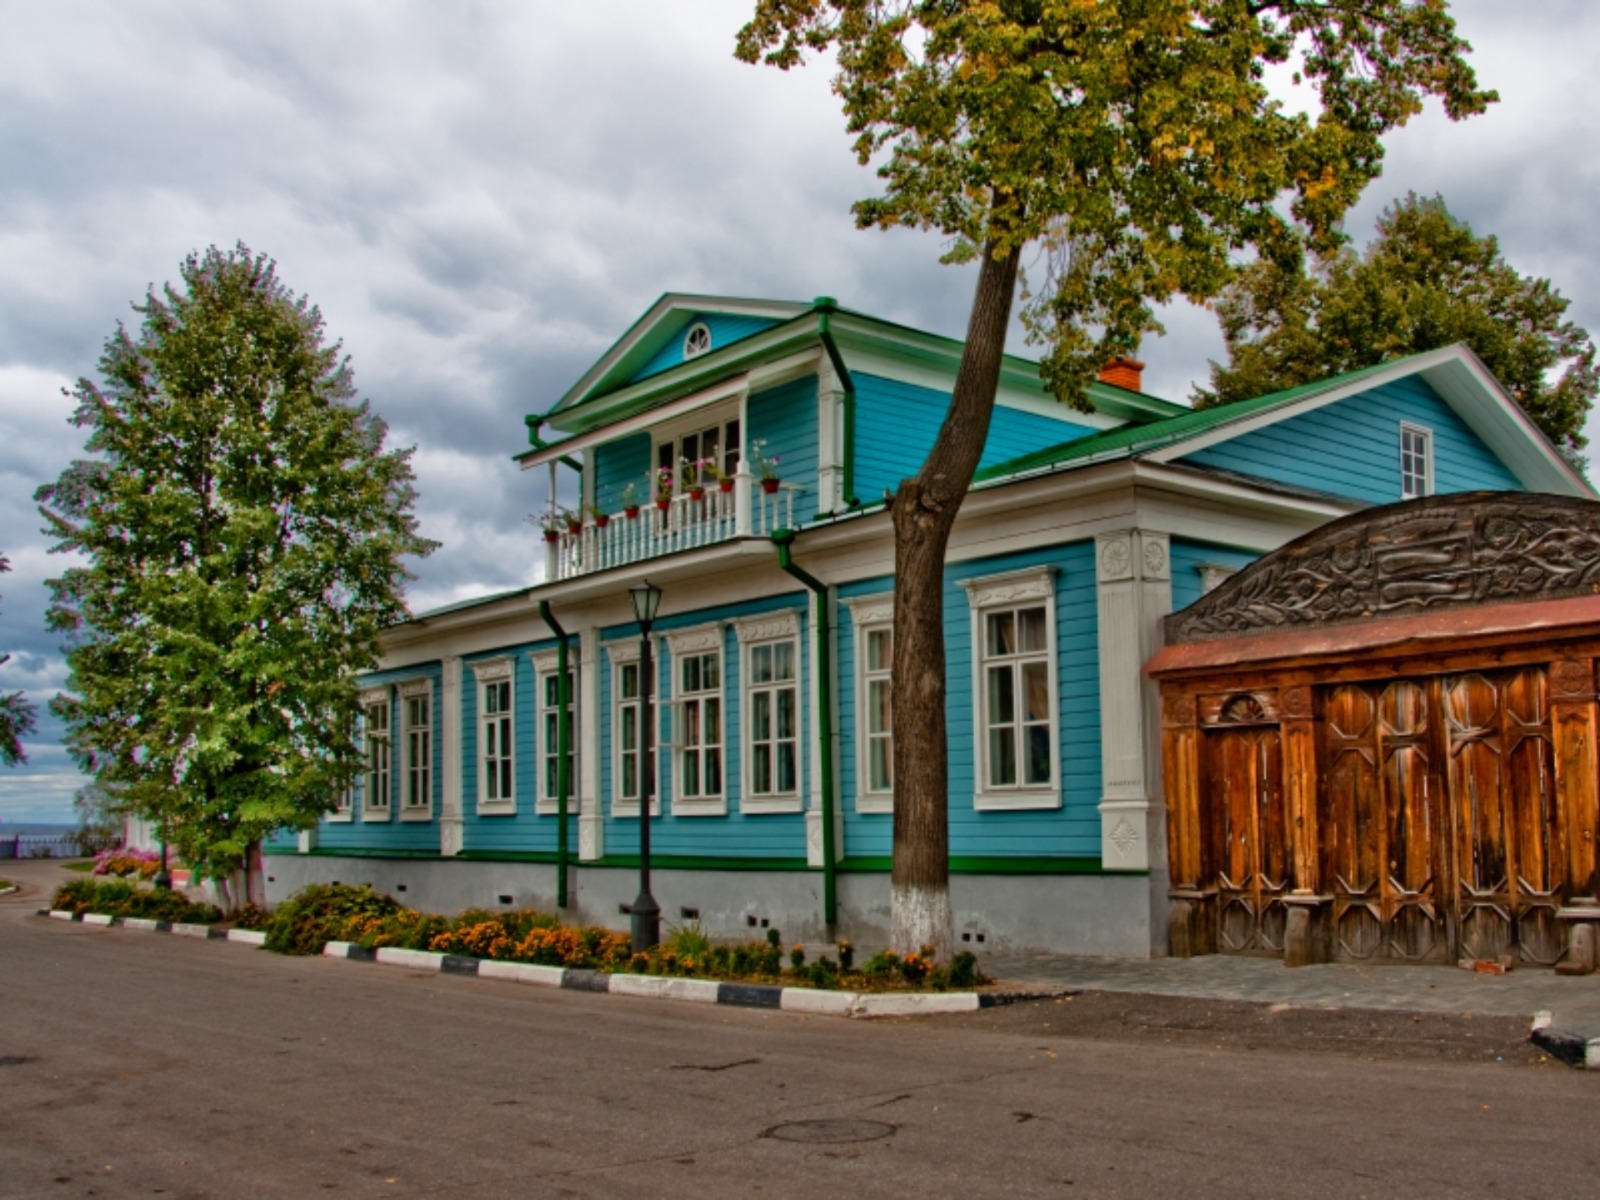 Дом-музей графини Паниной с воротами, украшенными знаменитой Городецкой глухой резьбой по дереву  